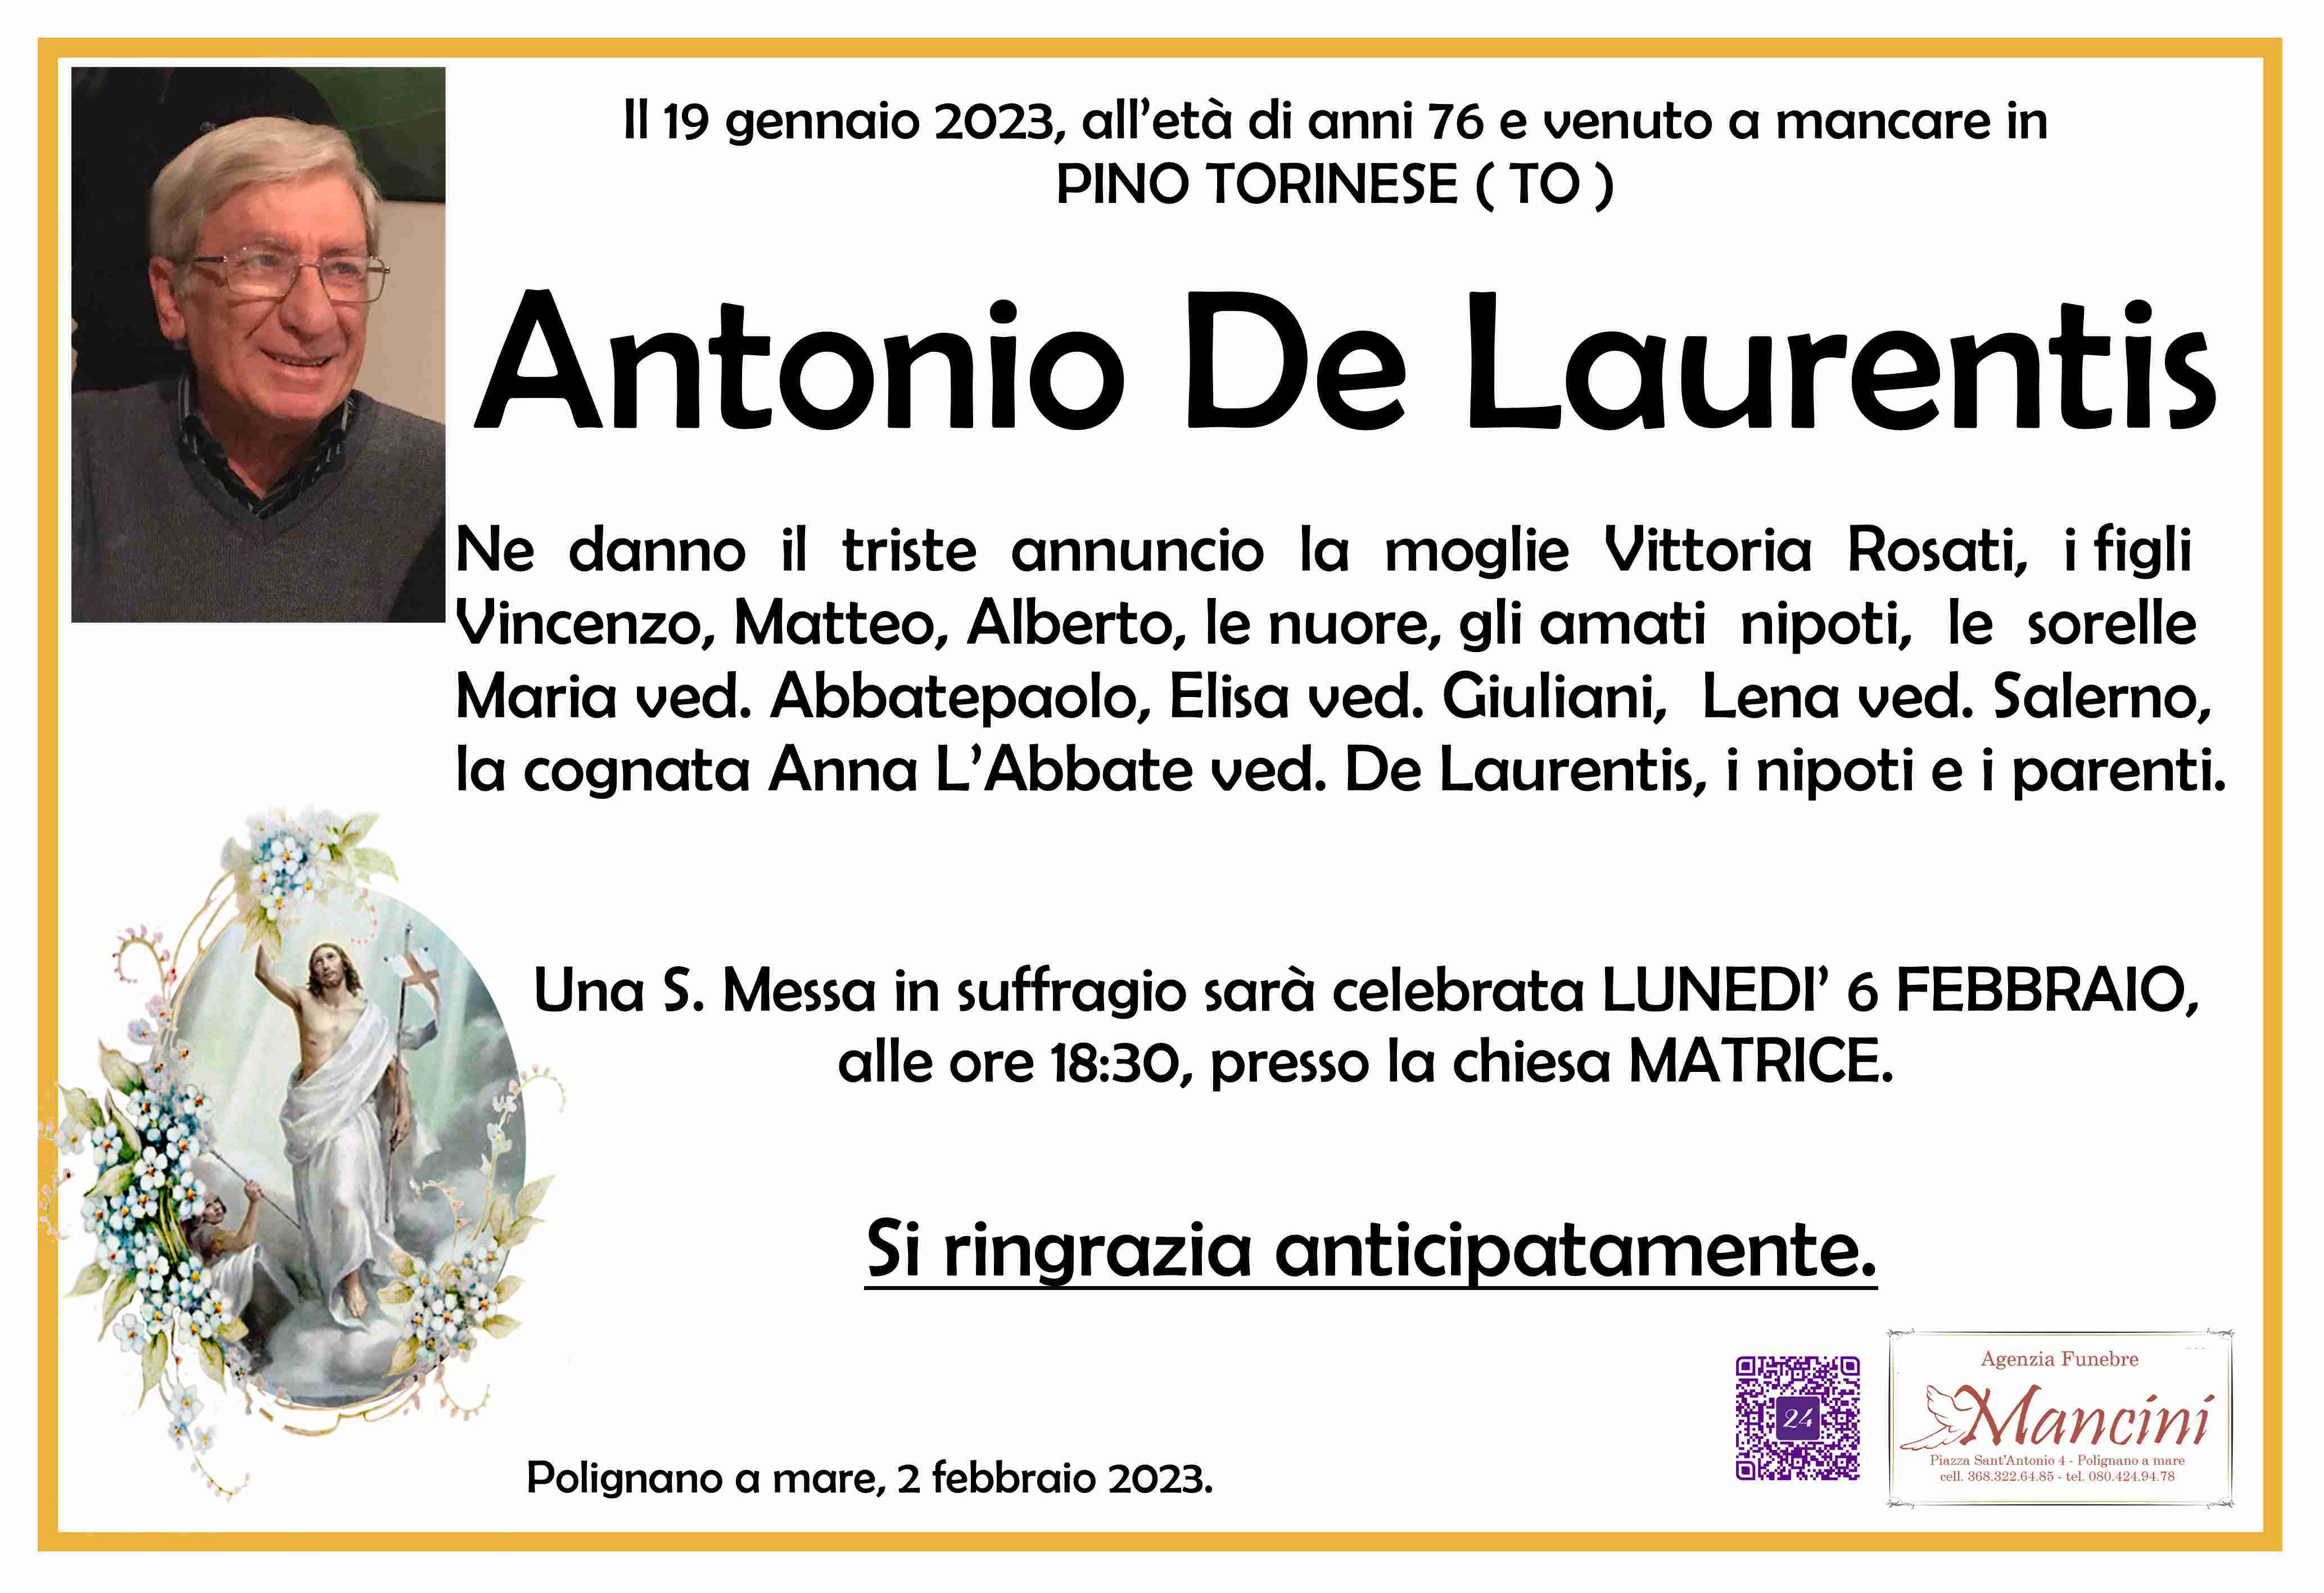 Antonio De Laurentis